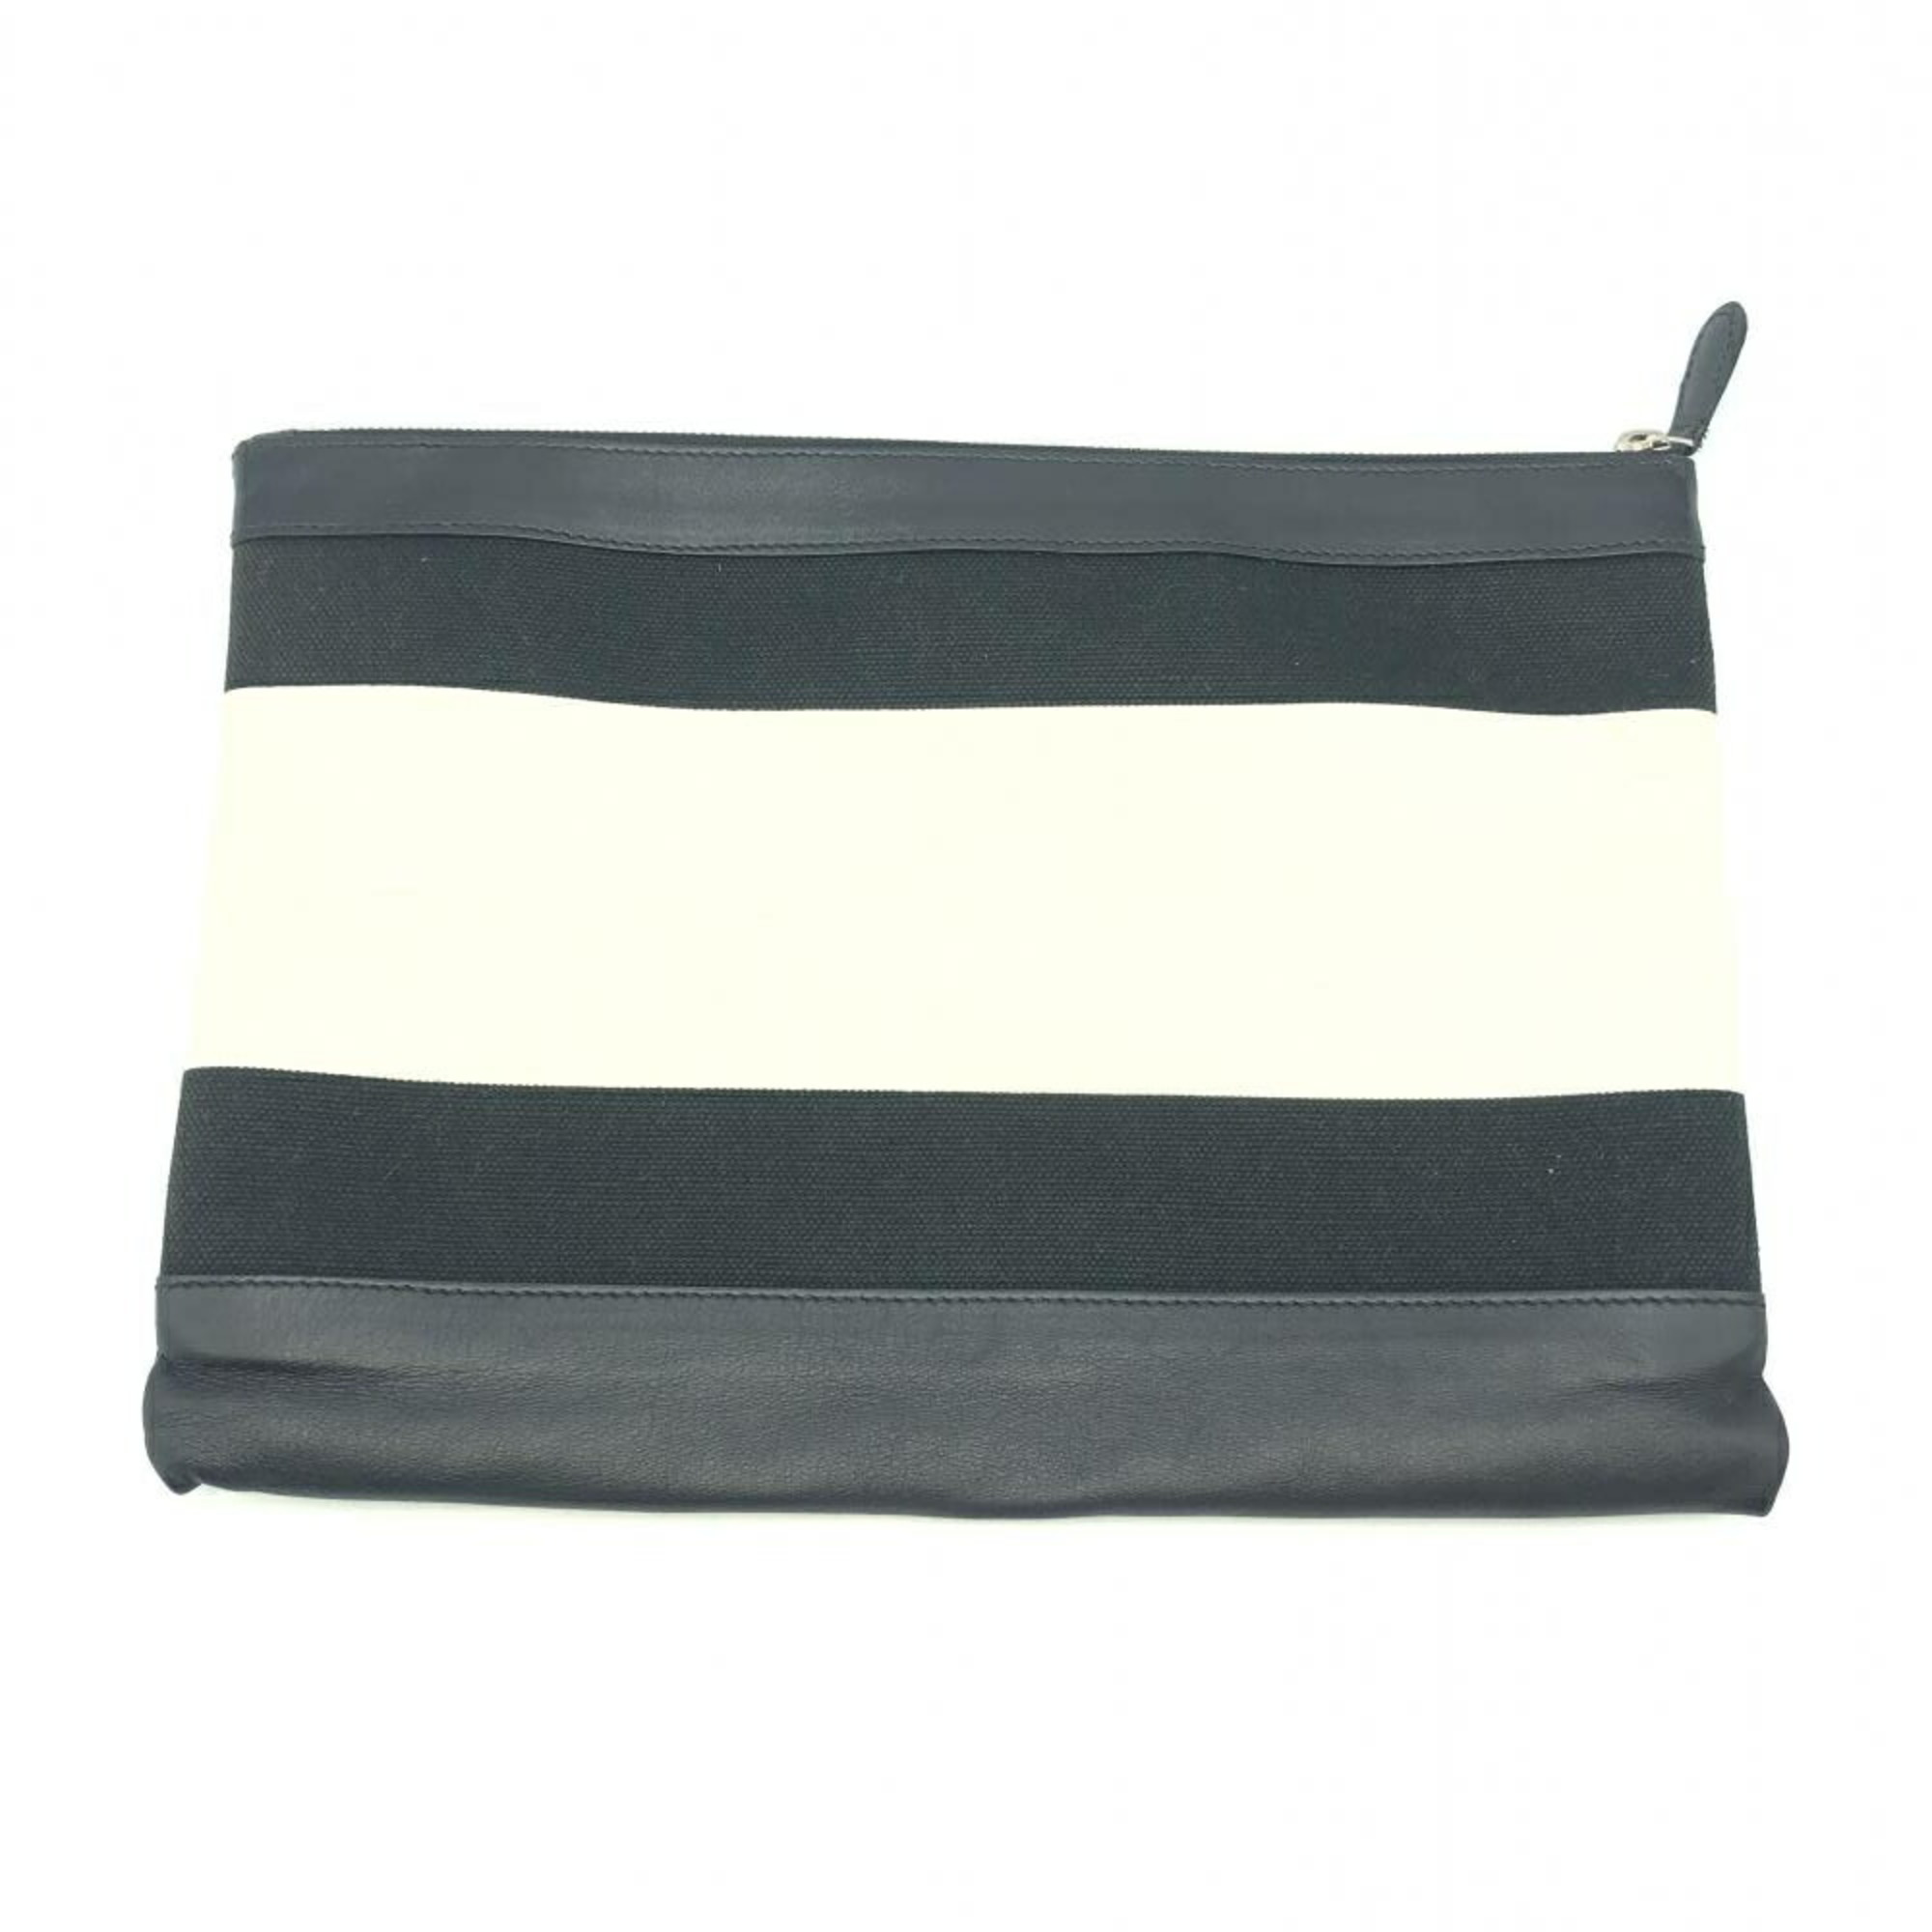 BALENCIAGA Canvas Clutch Bag Black White Balenciaga